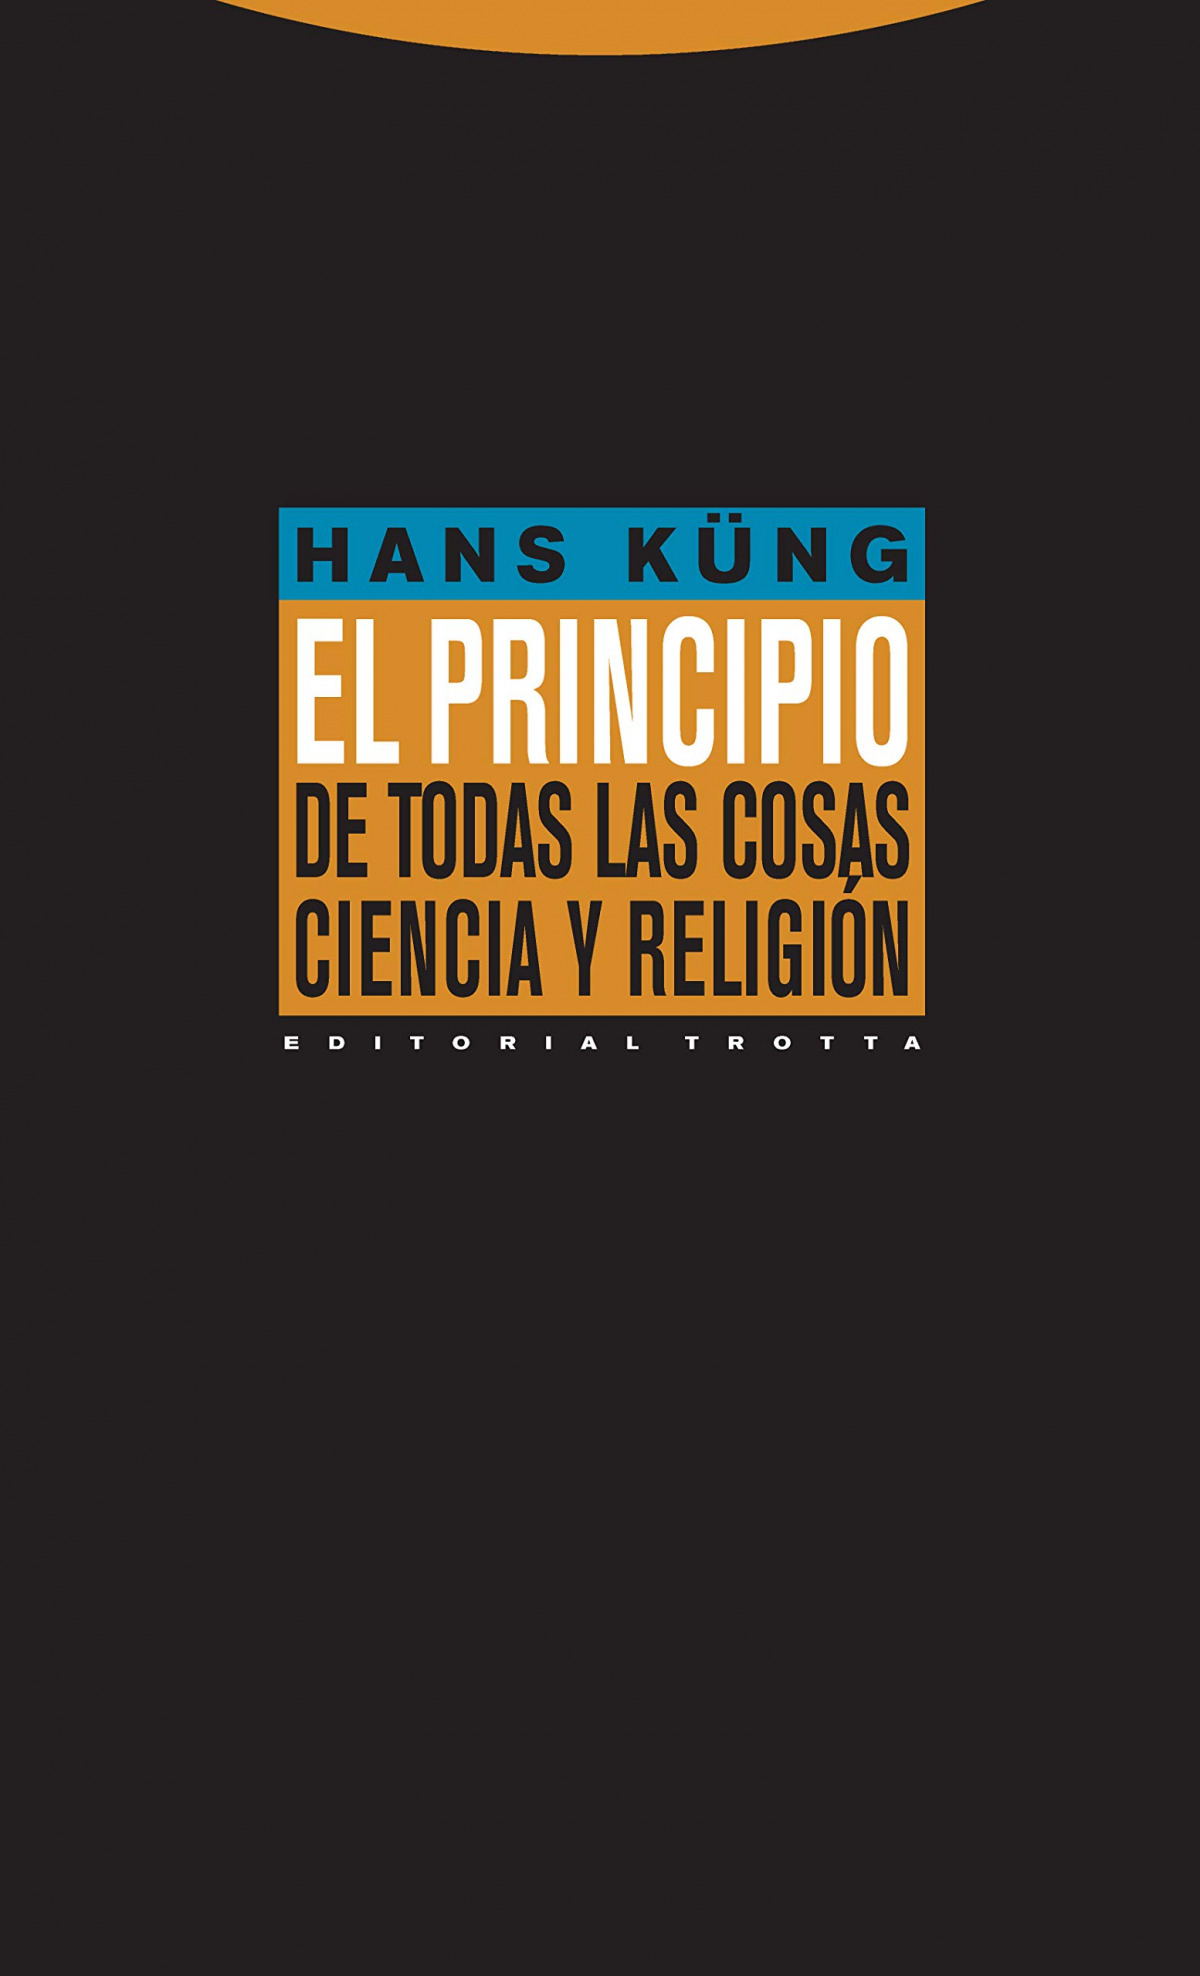 Principio todas las cosas - Kung, Hans